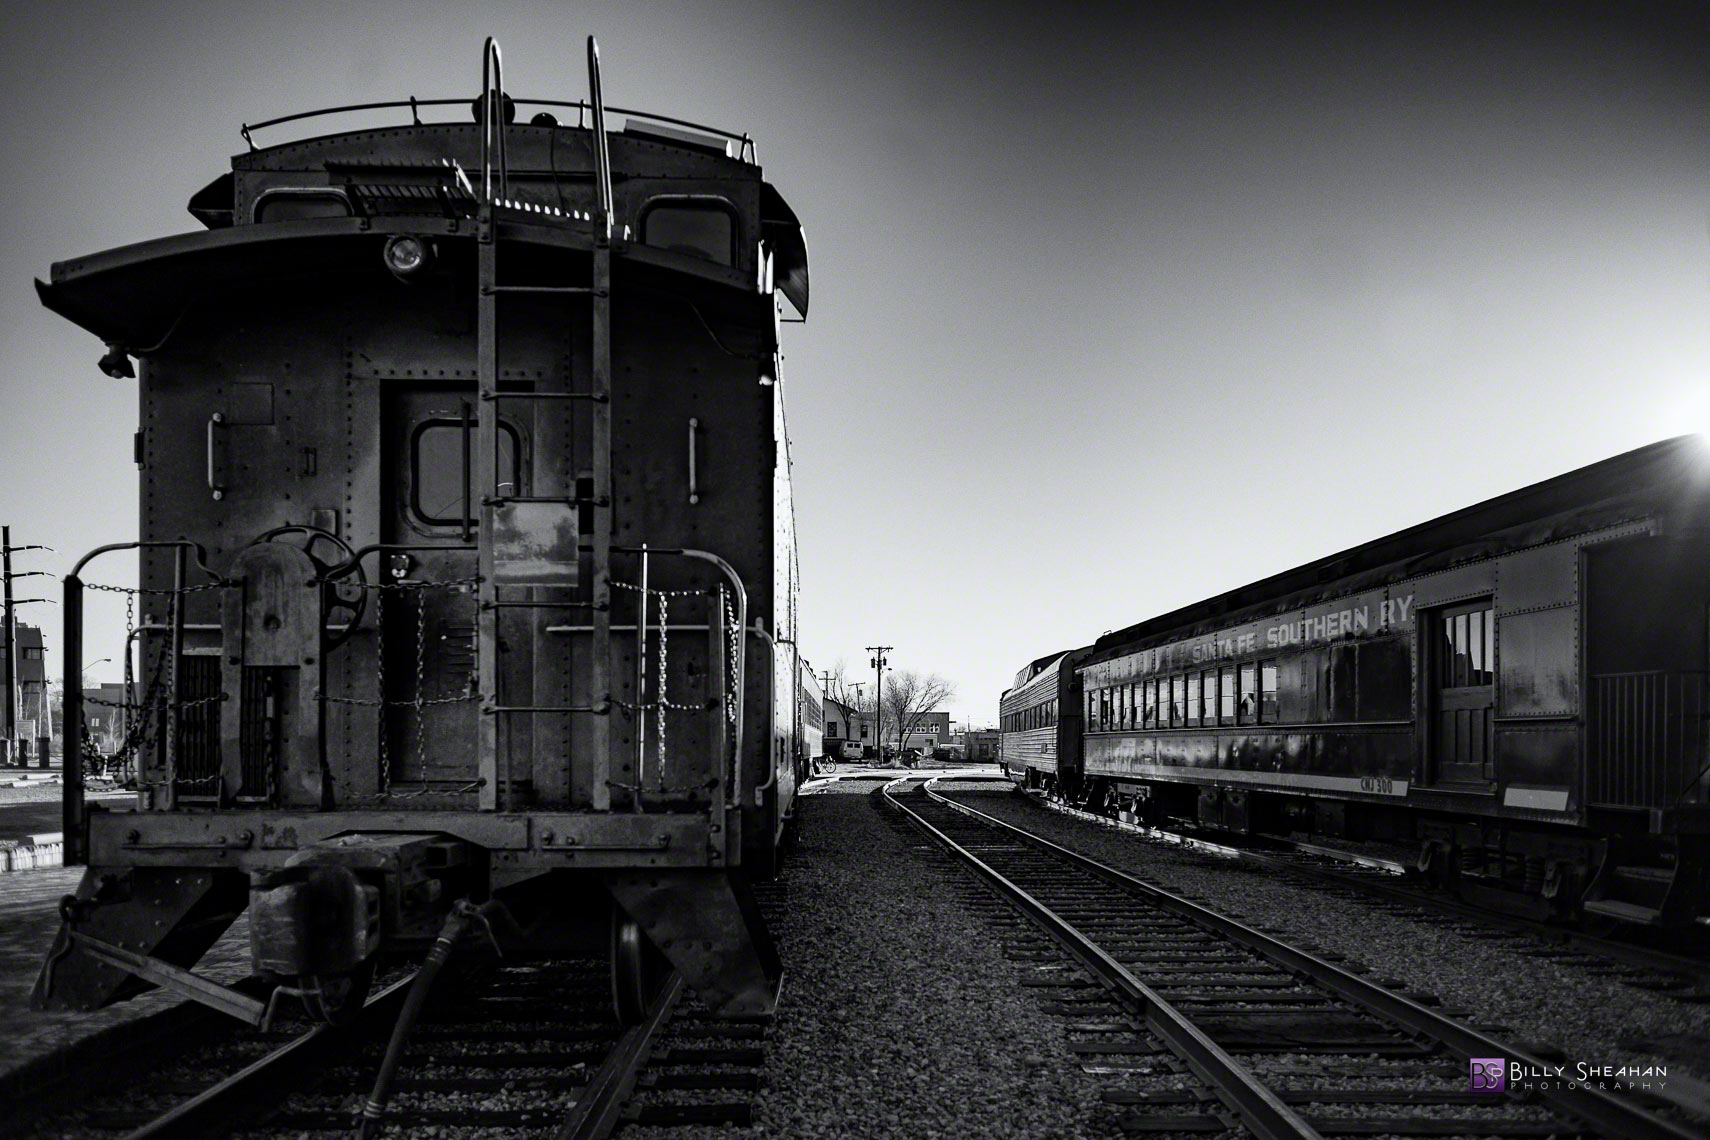 Santa Fe Trainyard